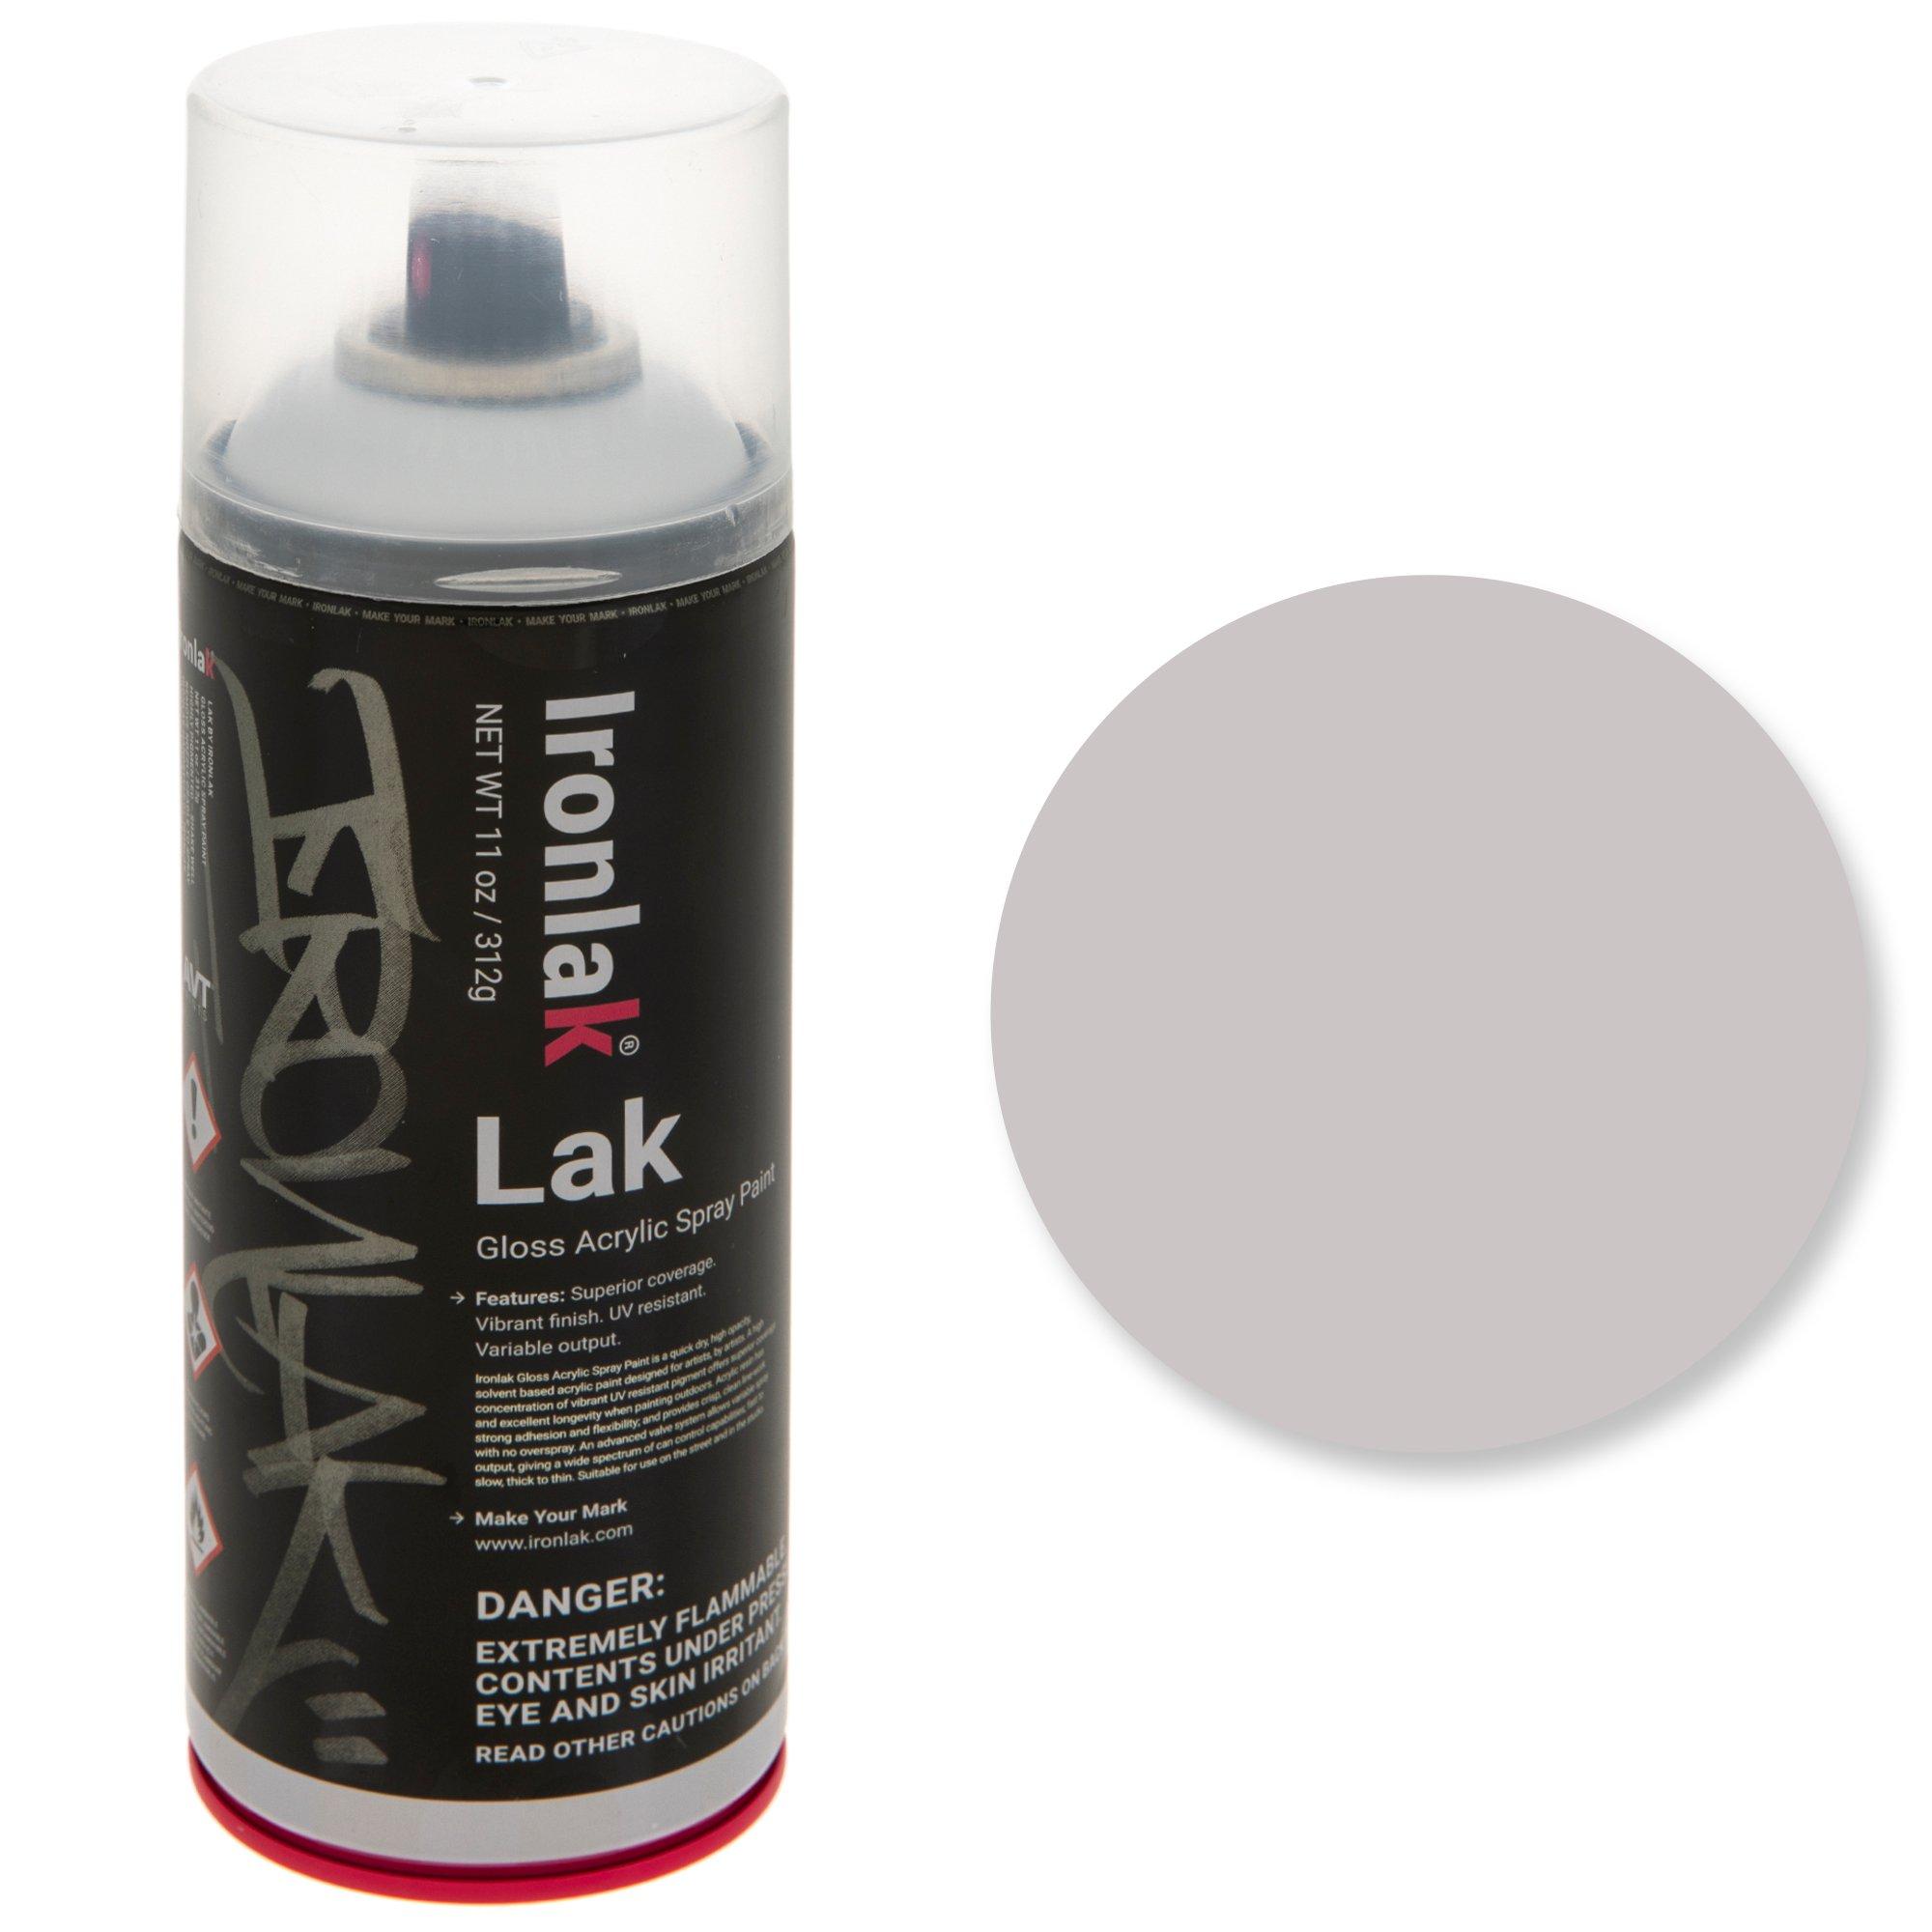 30 Colour Ironlak Acrylic Spray Paint Sampler